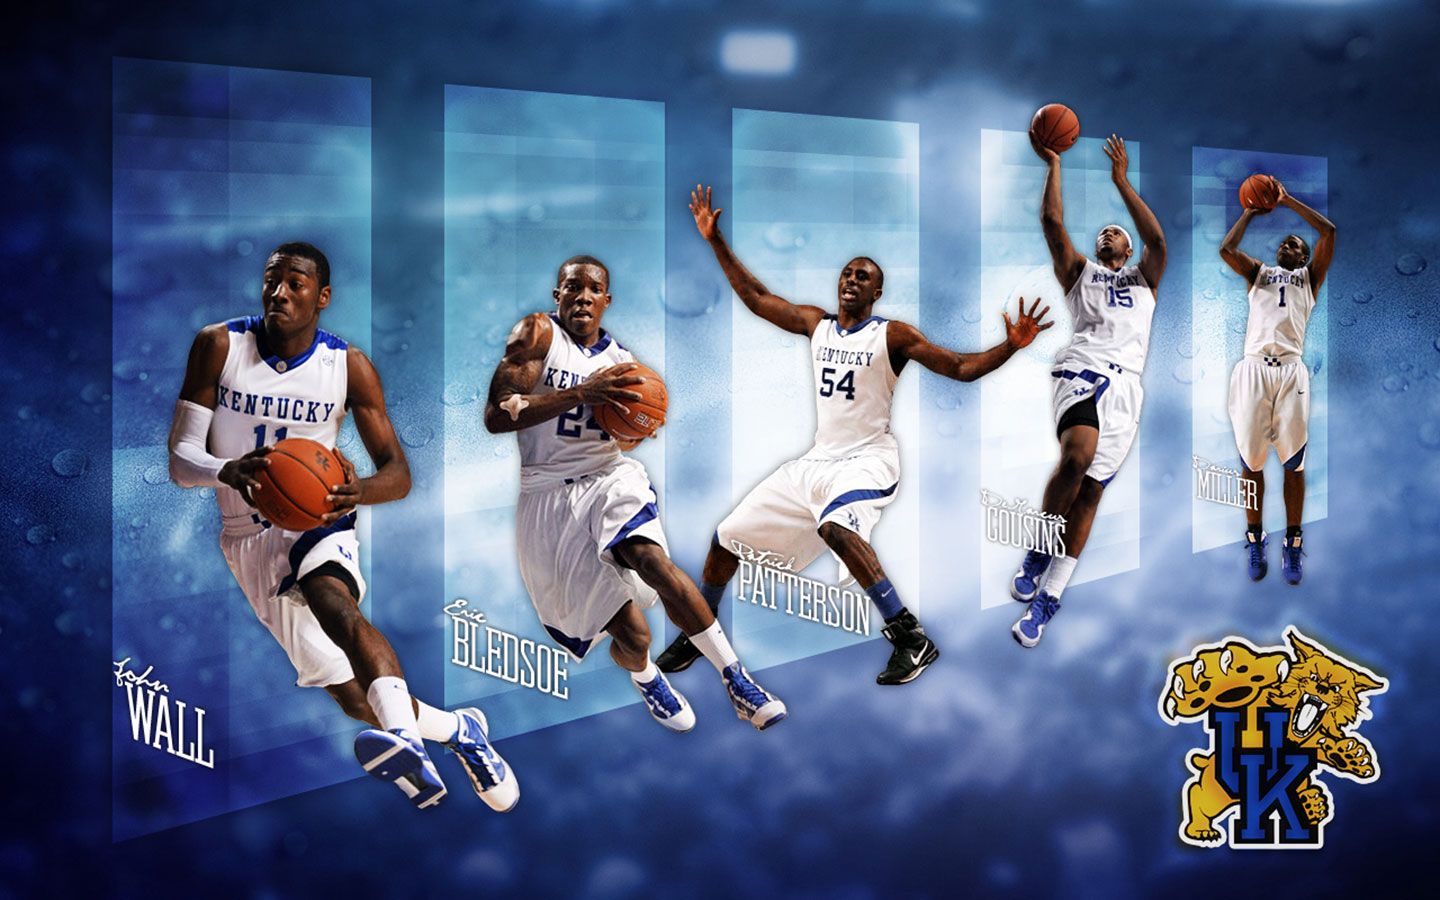 Kentucky Basketball Wallpaper For Desktop - Kentucky Basketball Player - HD Wallpaper 